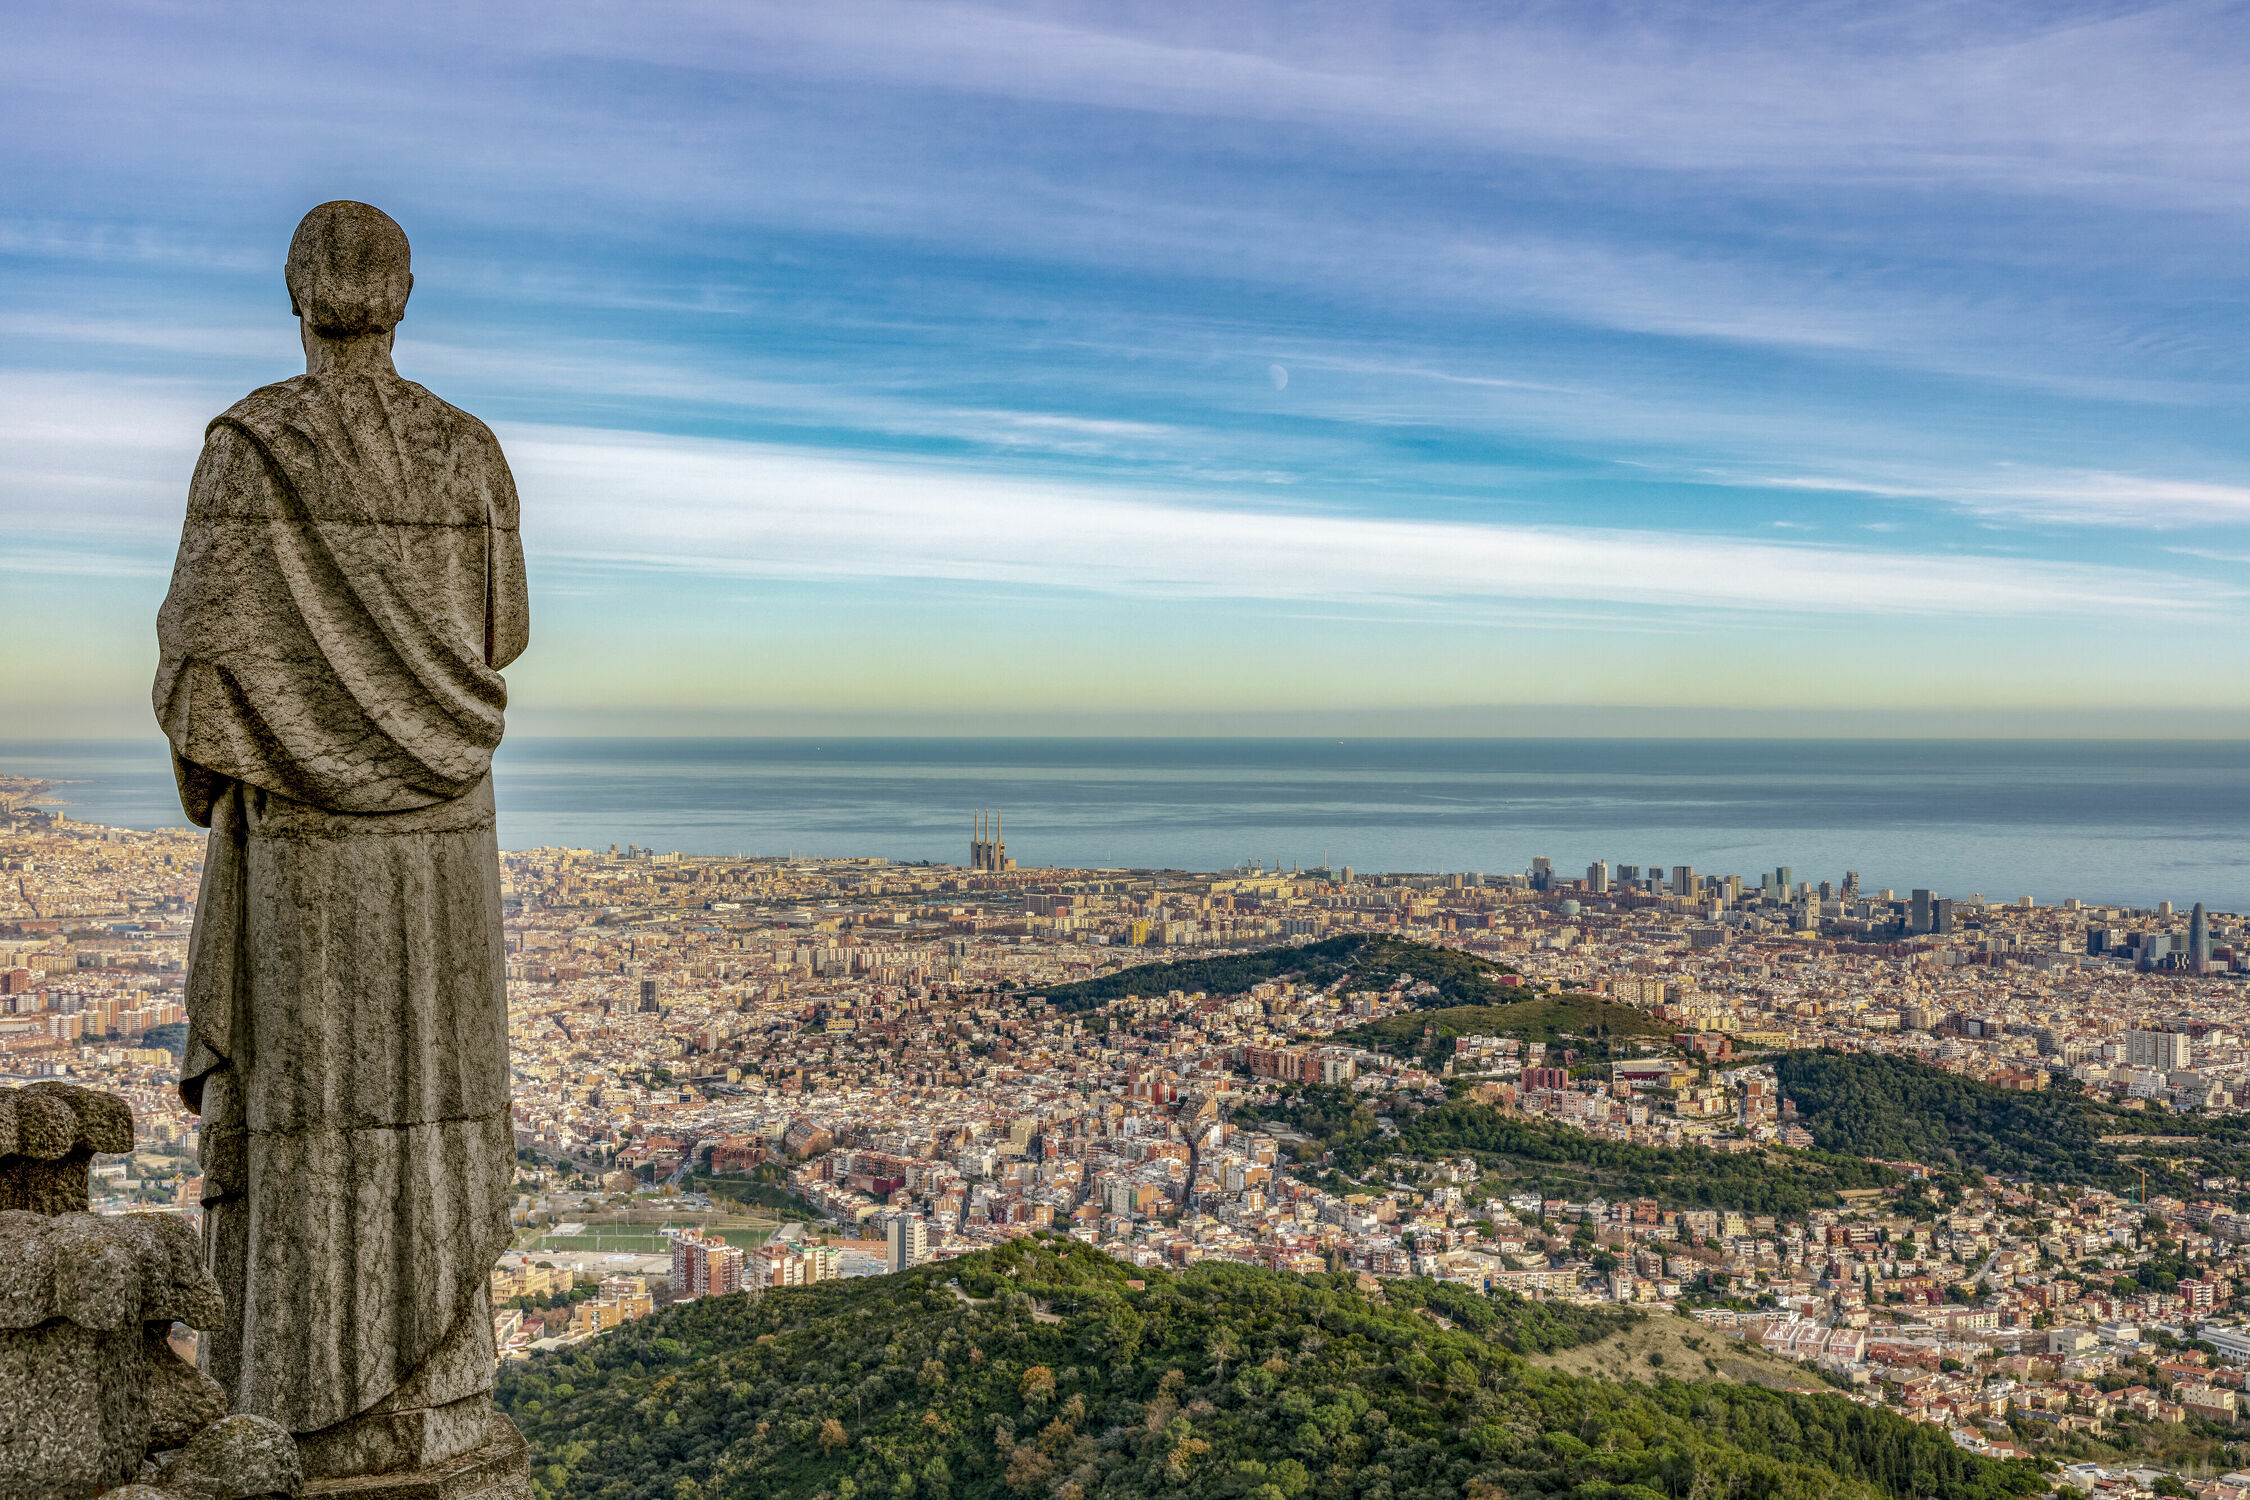 Bild mit Denkmäler und Statuen, Mittelmeer, Stadt, spanien, Statue, aussicht, Aussichtspunkt, Barcelona, Sagrat Cor, Tibidabo